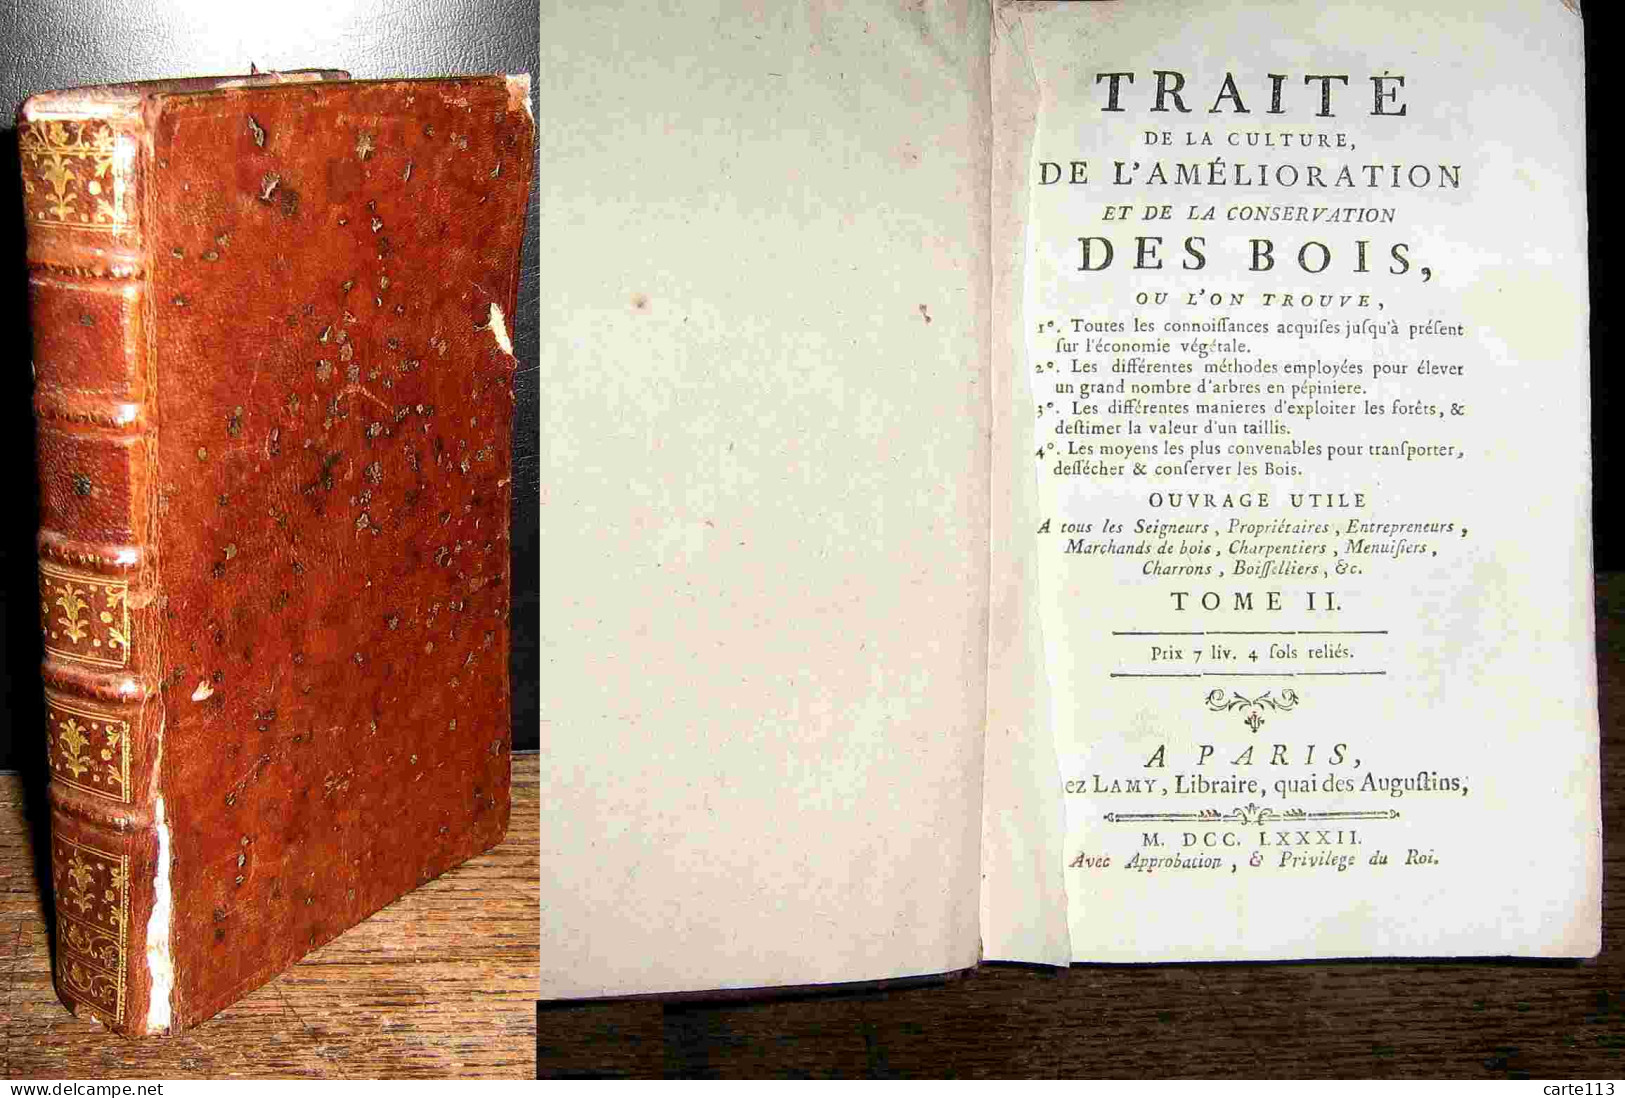 MASSE Jean - TRAITE DE LA CULTURE, DE L'AMELIORATION ET DE LA CONSERVATION DES BOI - 1701-1800